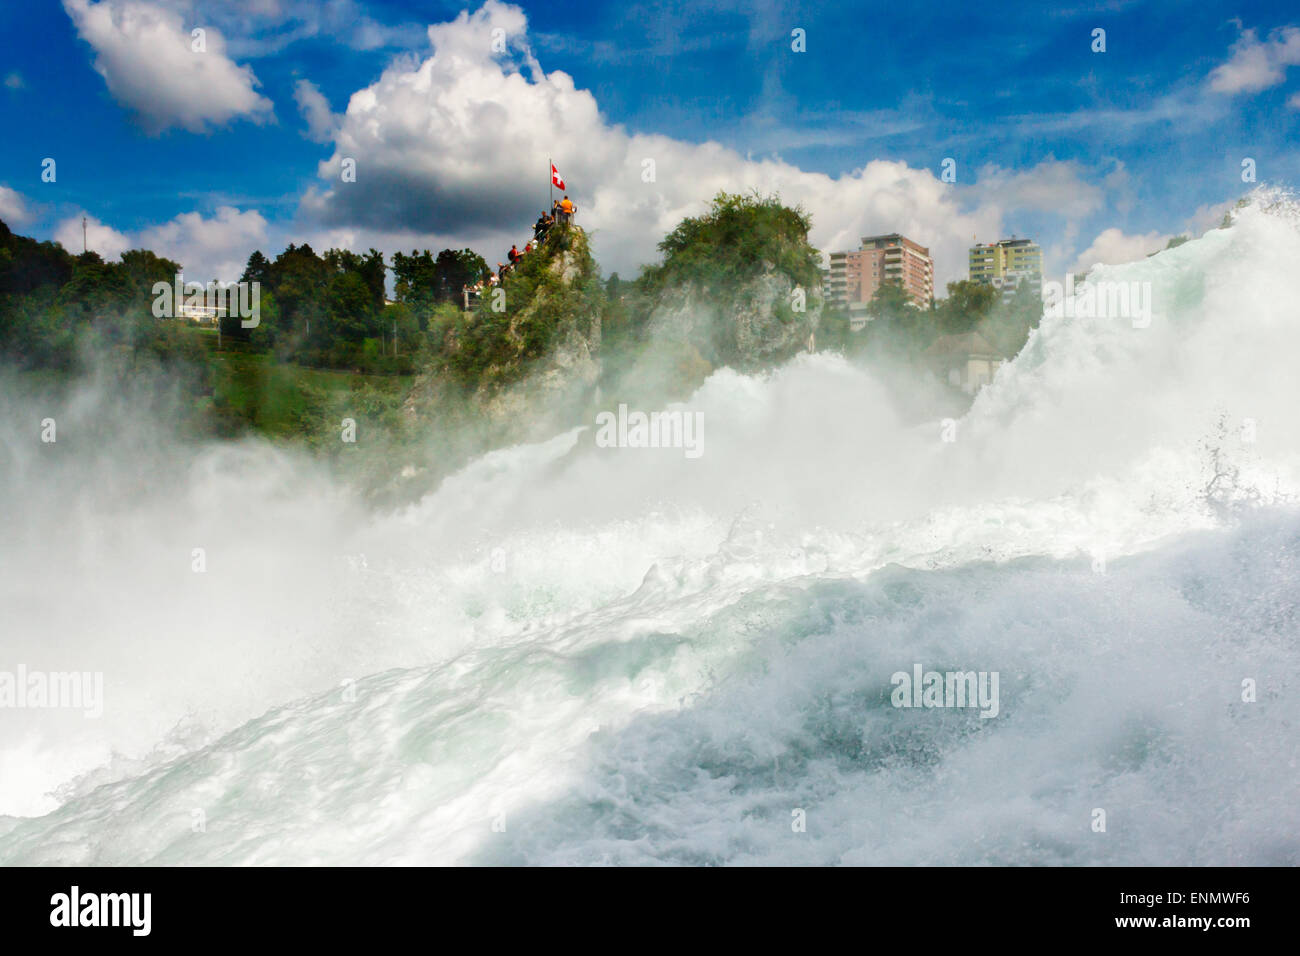 Rheinfall - der grösste Wasserfall Europas, befindet sich in Schaffhausen, Schweiz Stockfoto